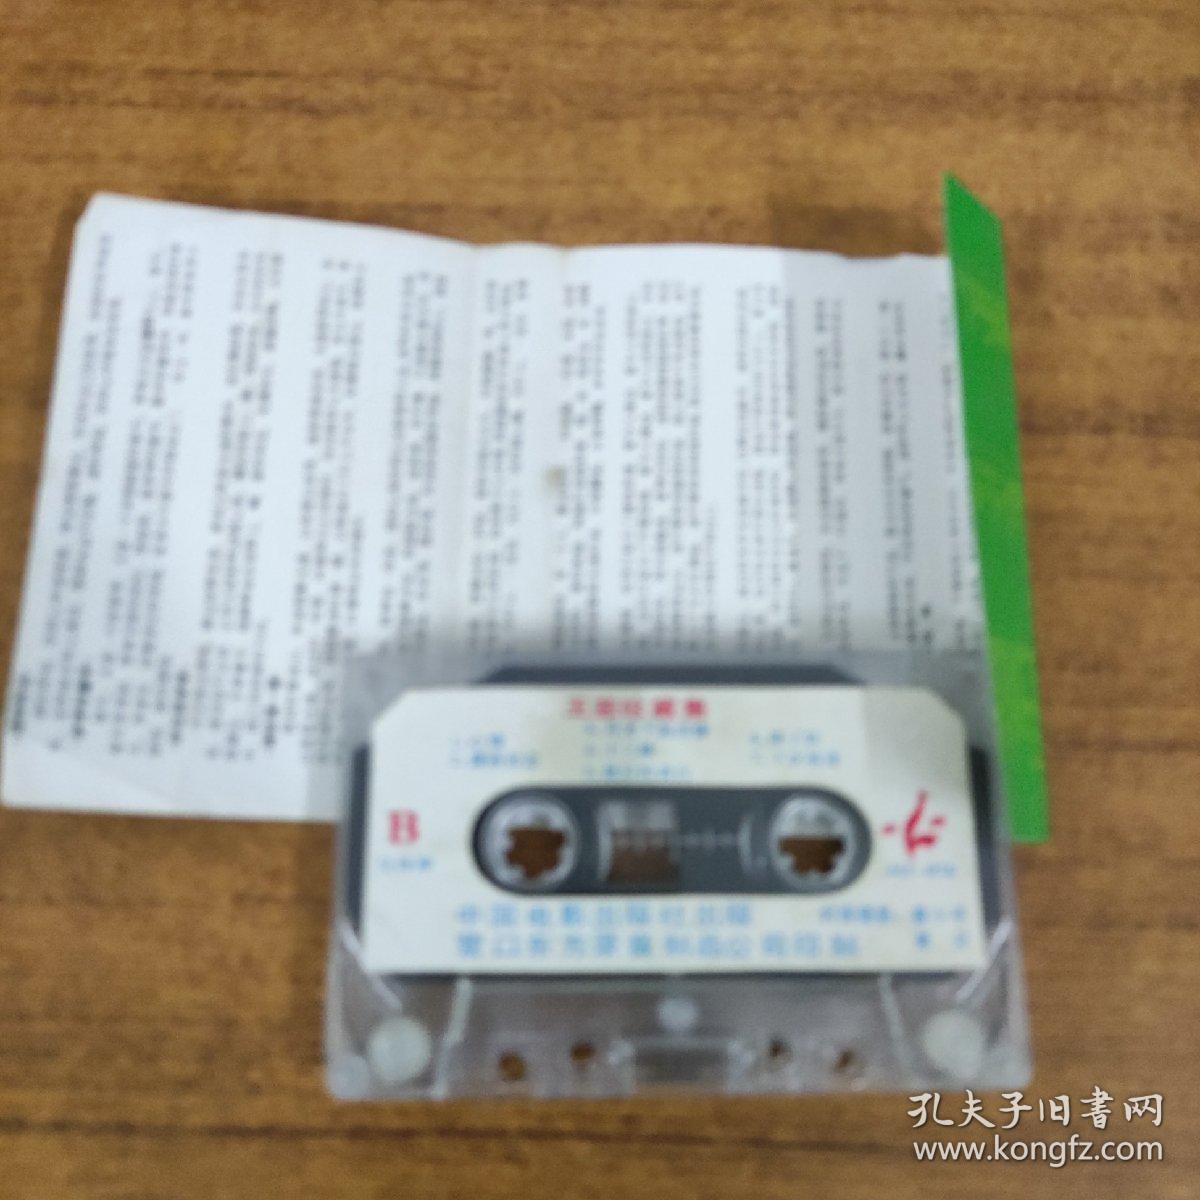 61磁带：迷人小姐——王菲珍藏集 有歌词